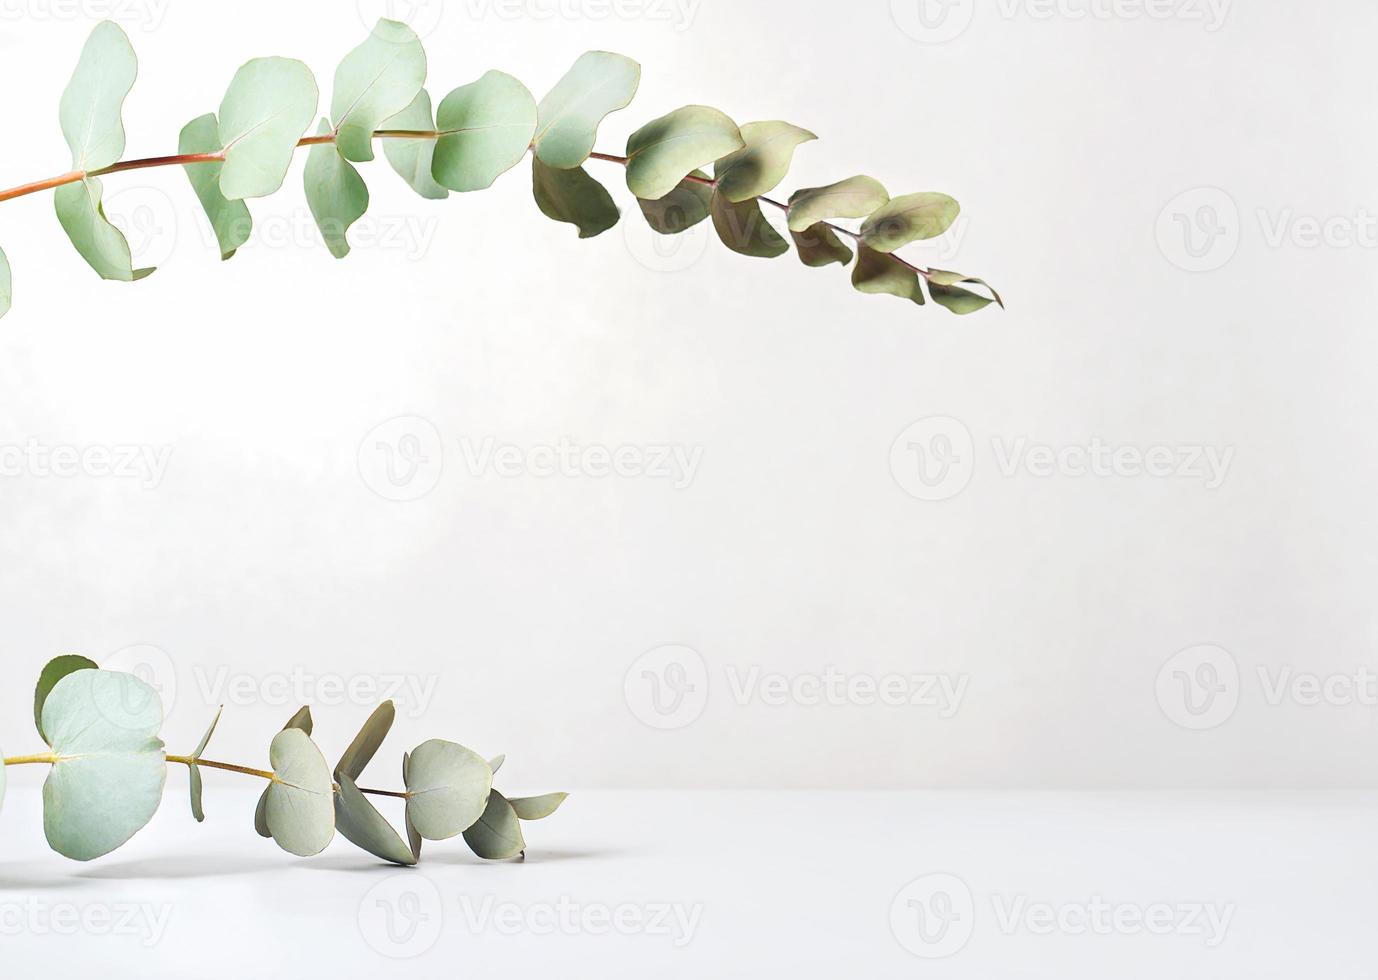 eucaliptusbladeren op beige achtergrond, weergave van productplaatsing. ruimte kopiëren. groene bladerenscène voor het tonen van eco-cosmetische of zelfzorgartikelen. foto